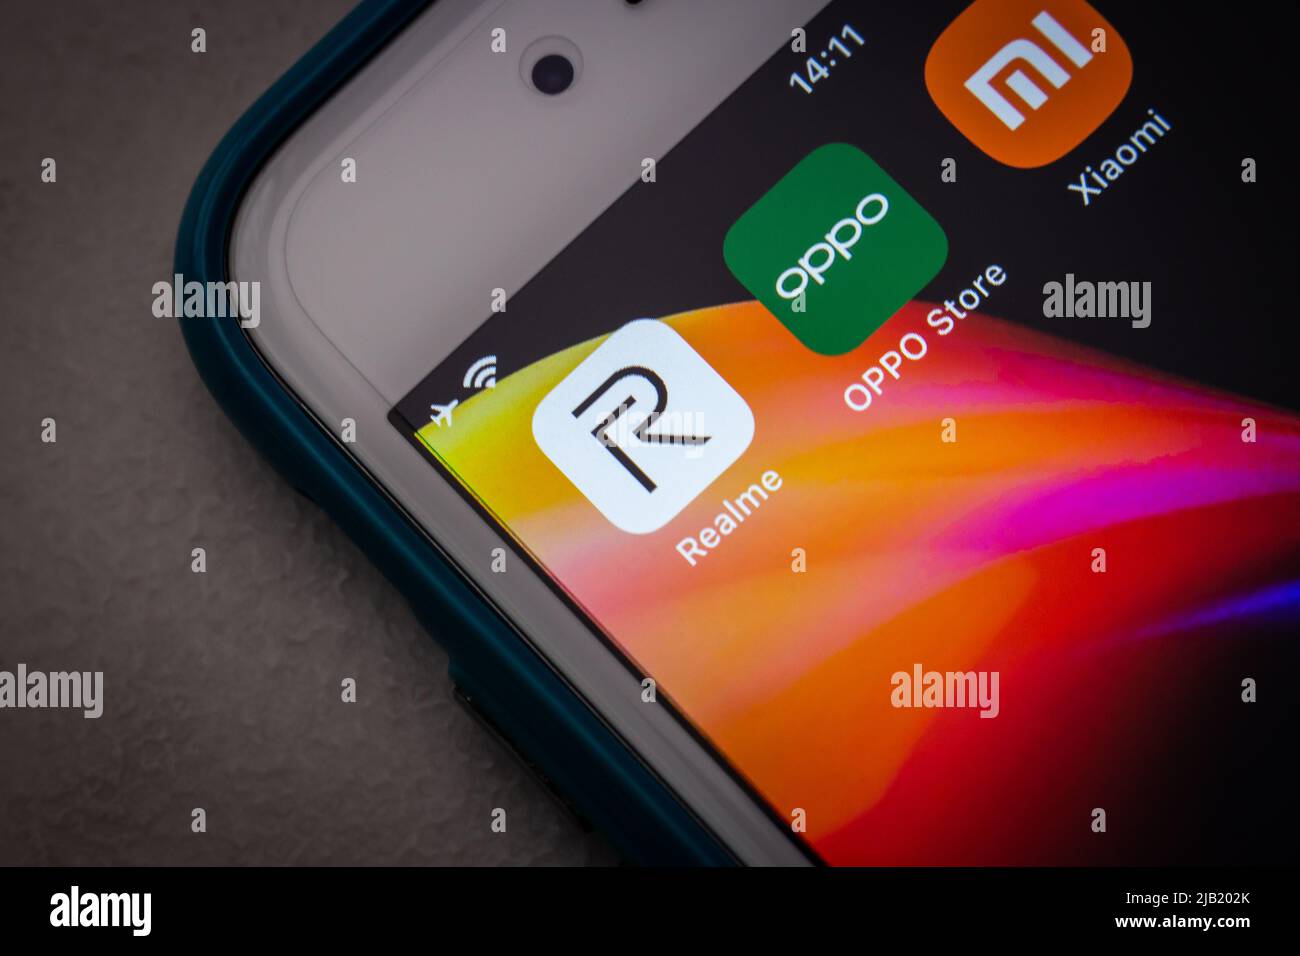 Realme, ein chinesischer Smartphone-Hersteller, der eine Tochtergesellschaft von BBK Electronics ist, mit Wettbewerbern (Oppo und Xiaomi) in dunkler Stimmung Stockfoto